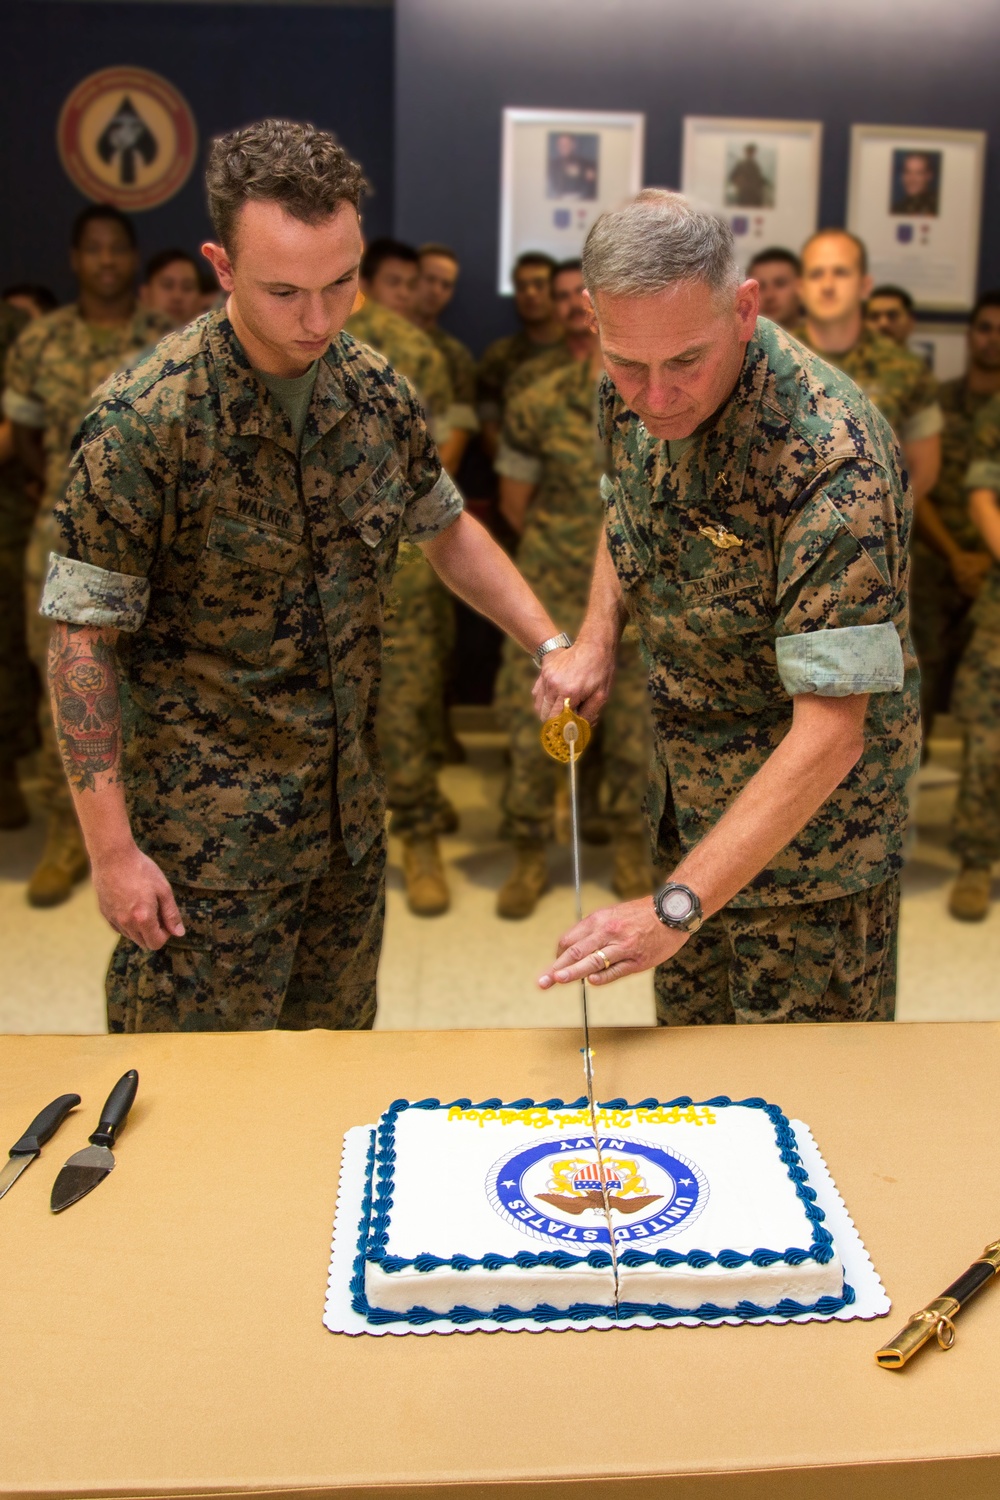 Navy celebrates 242nd birthday